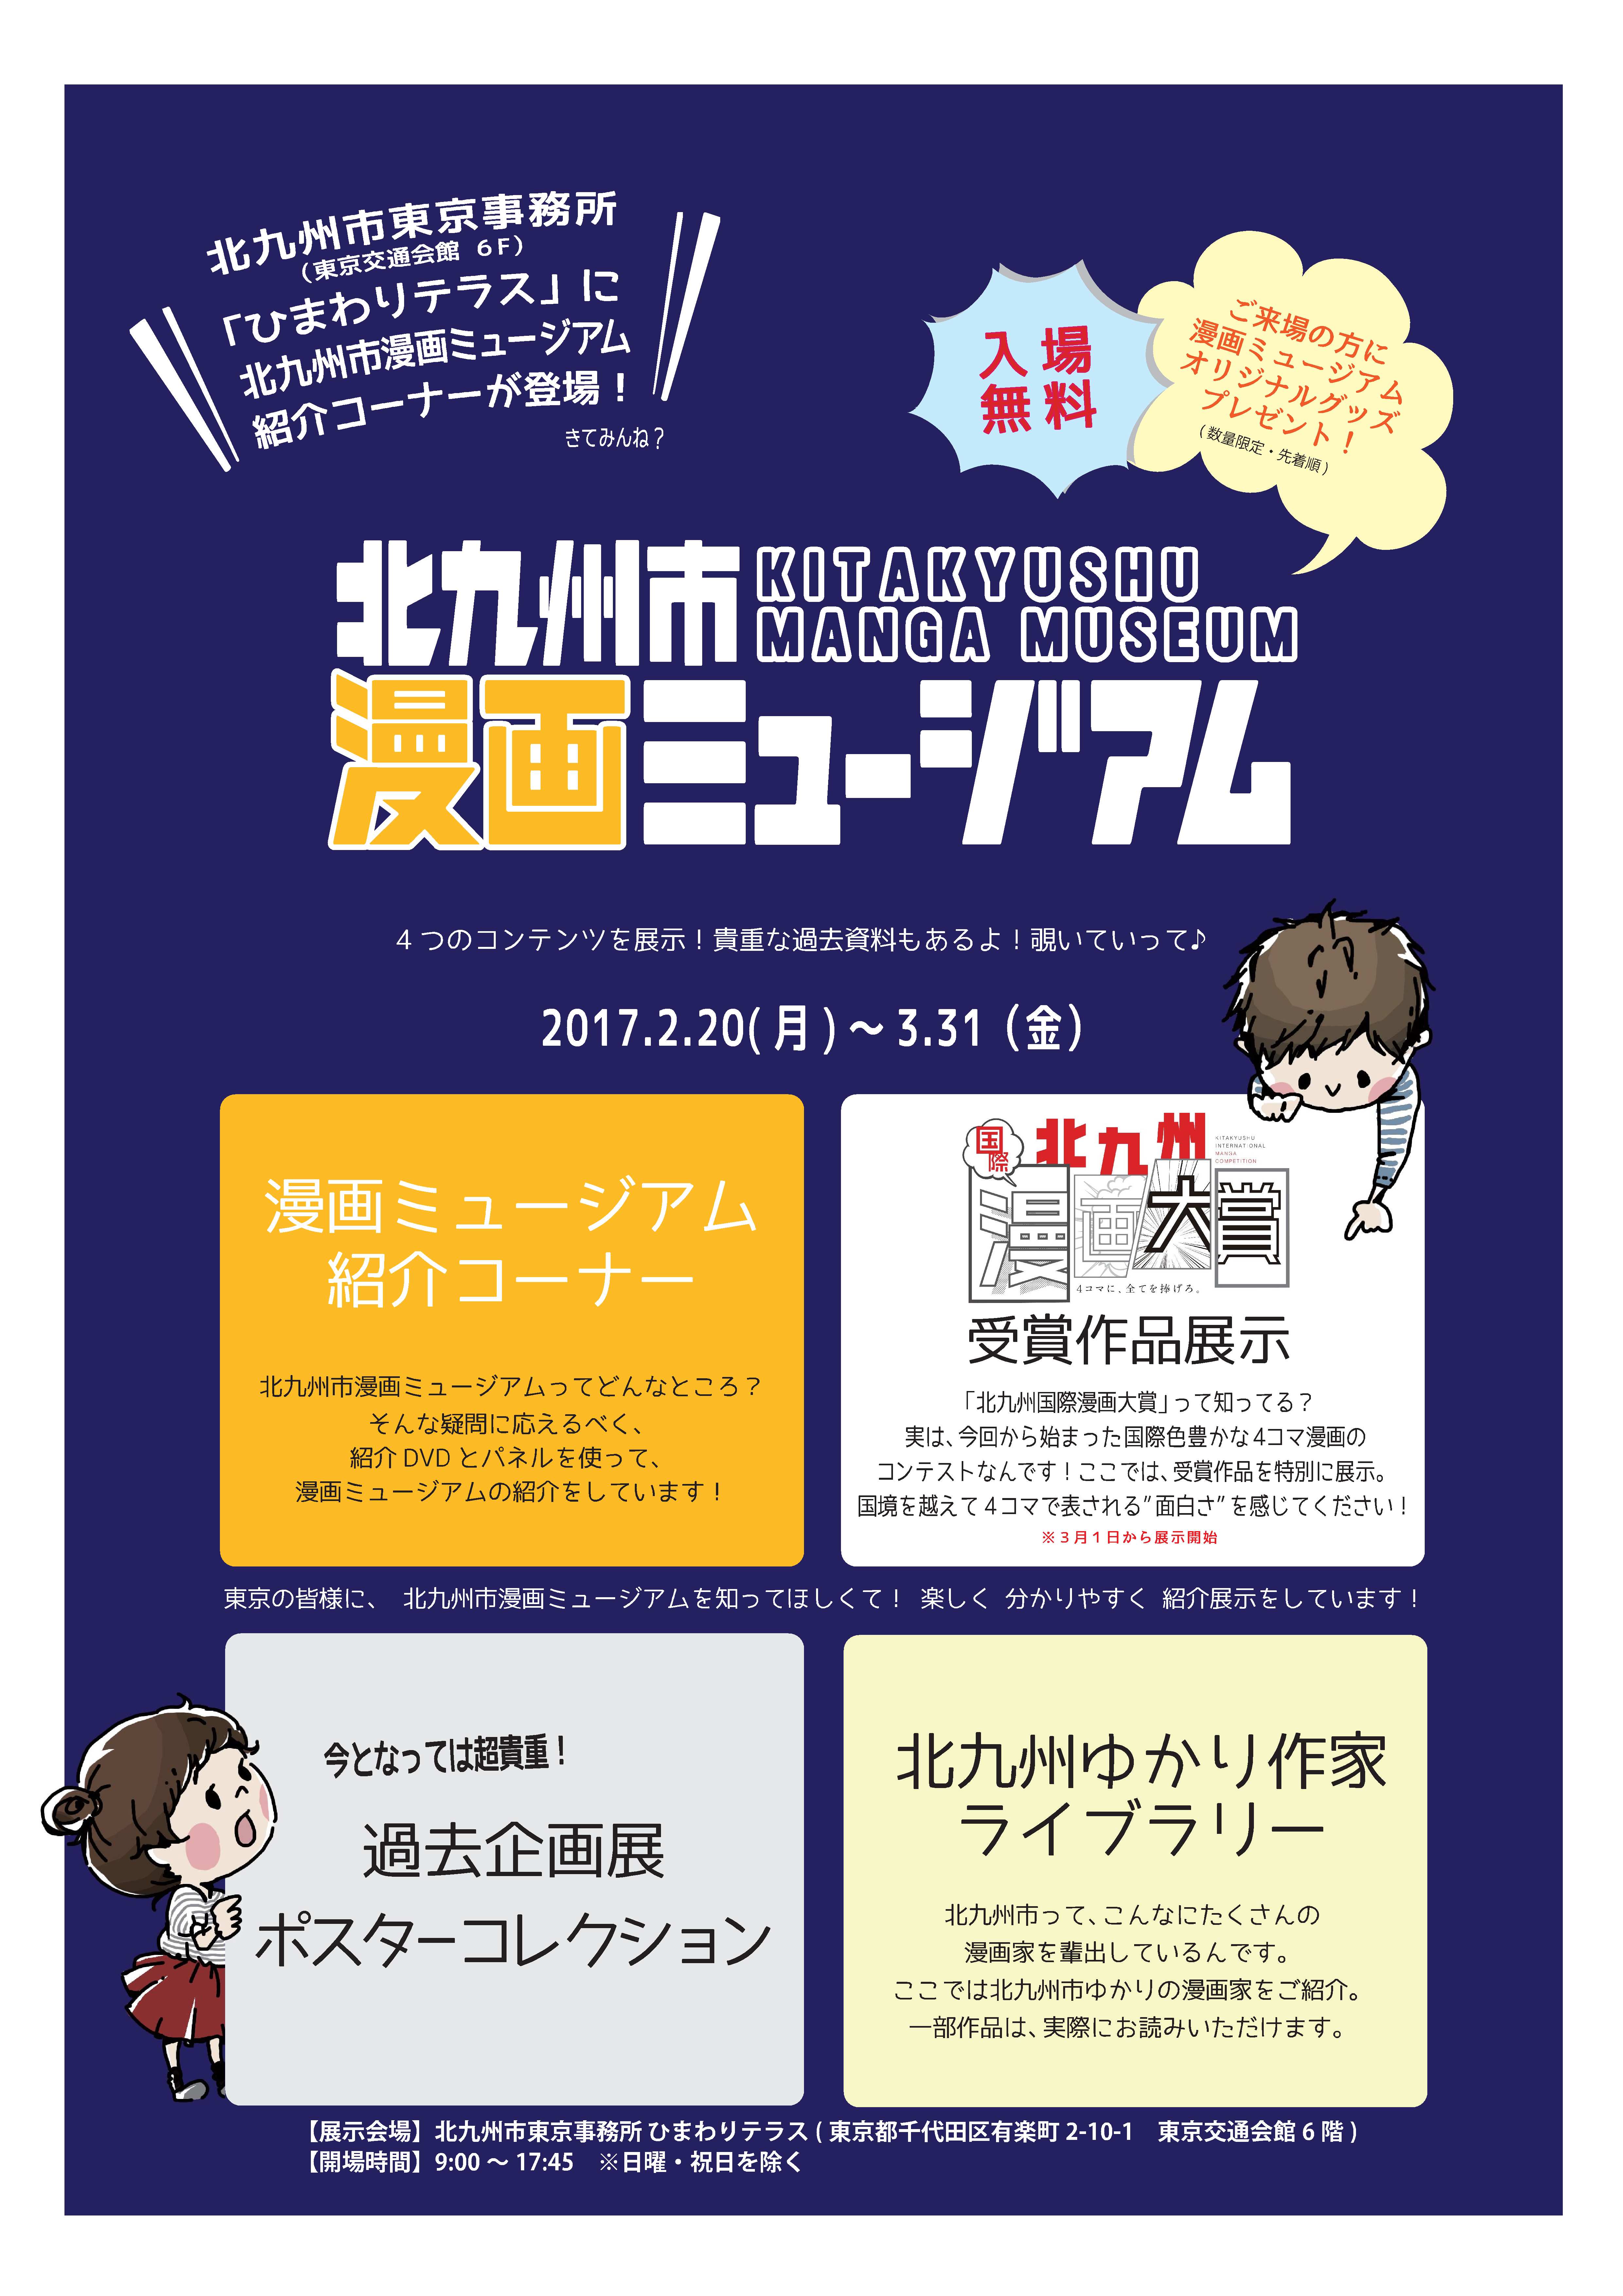 ついに東京進出 北九州市漫画ミュージアムが北九州市東京事務所に出張展示 平成29年3月31日 金 まで 北九州市のプレスリリース